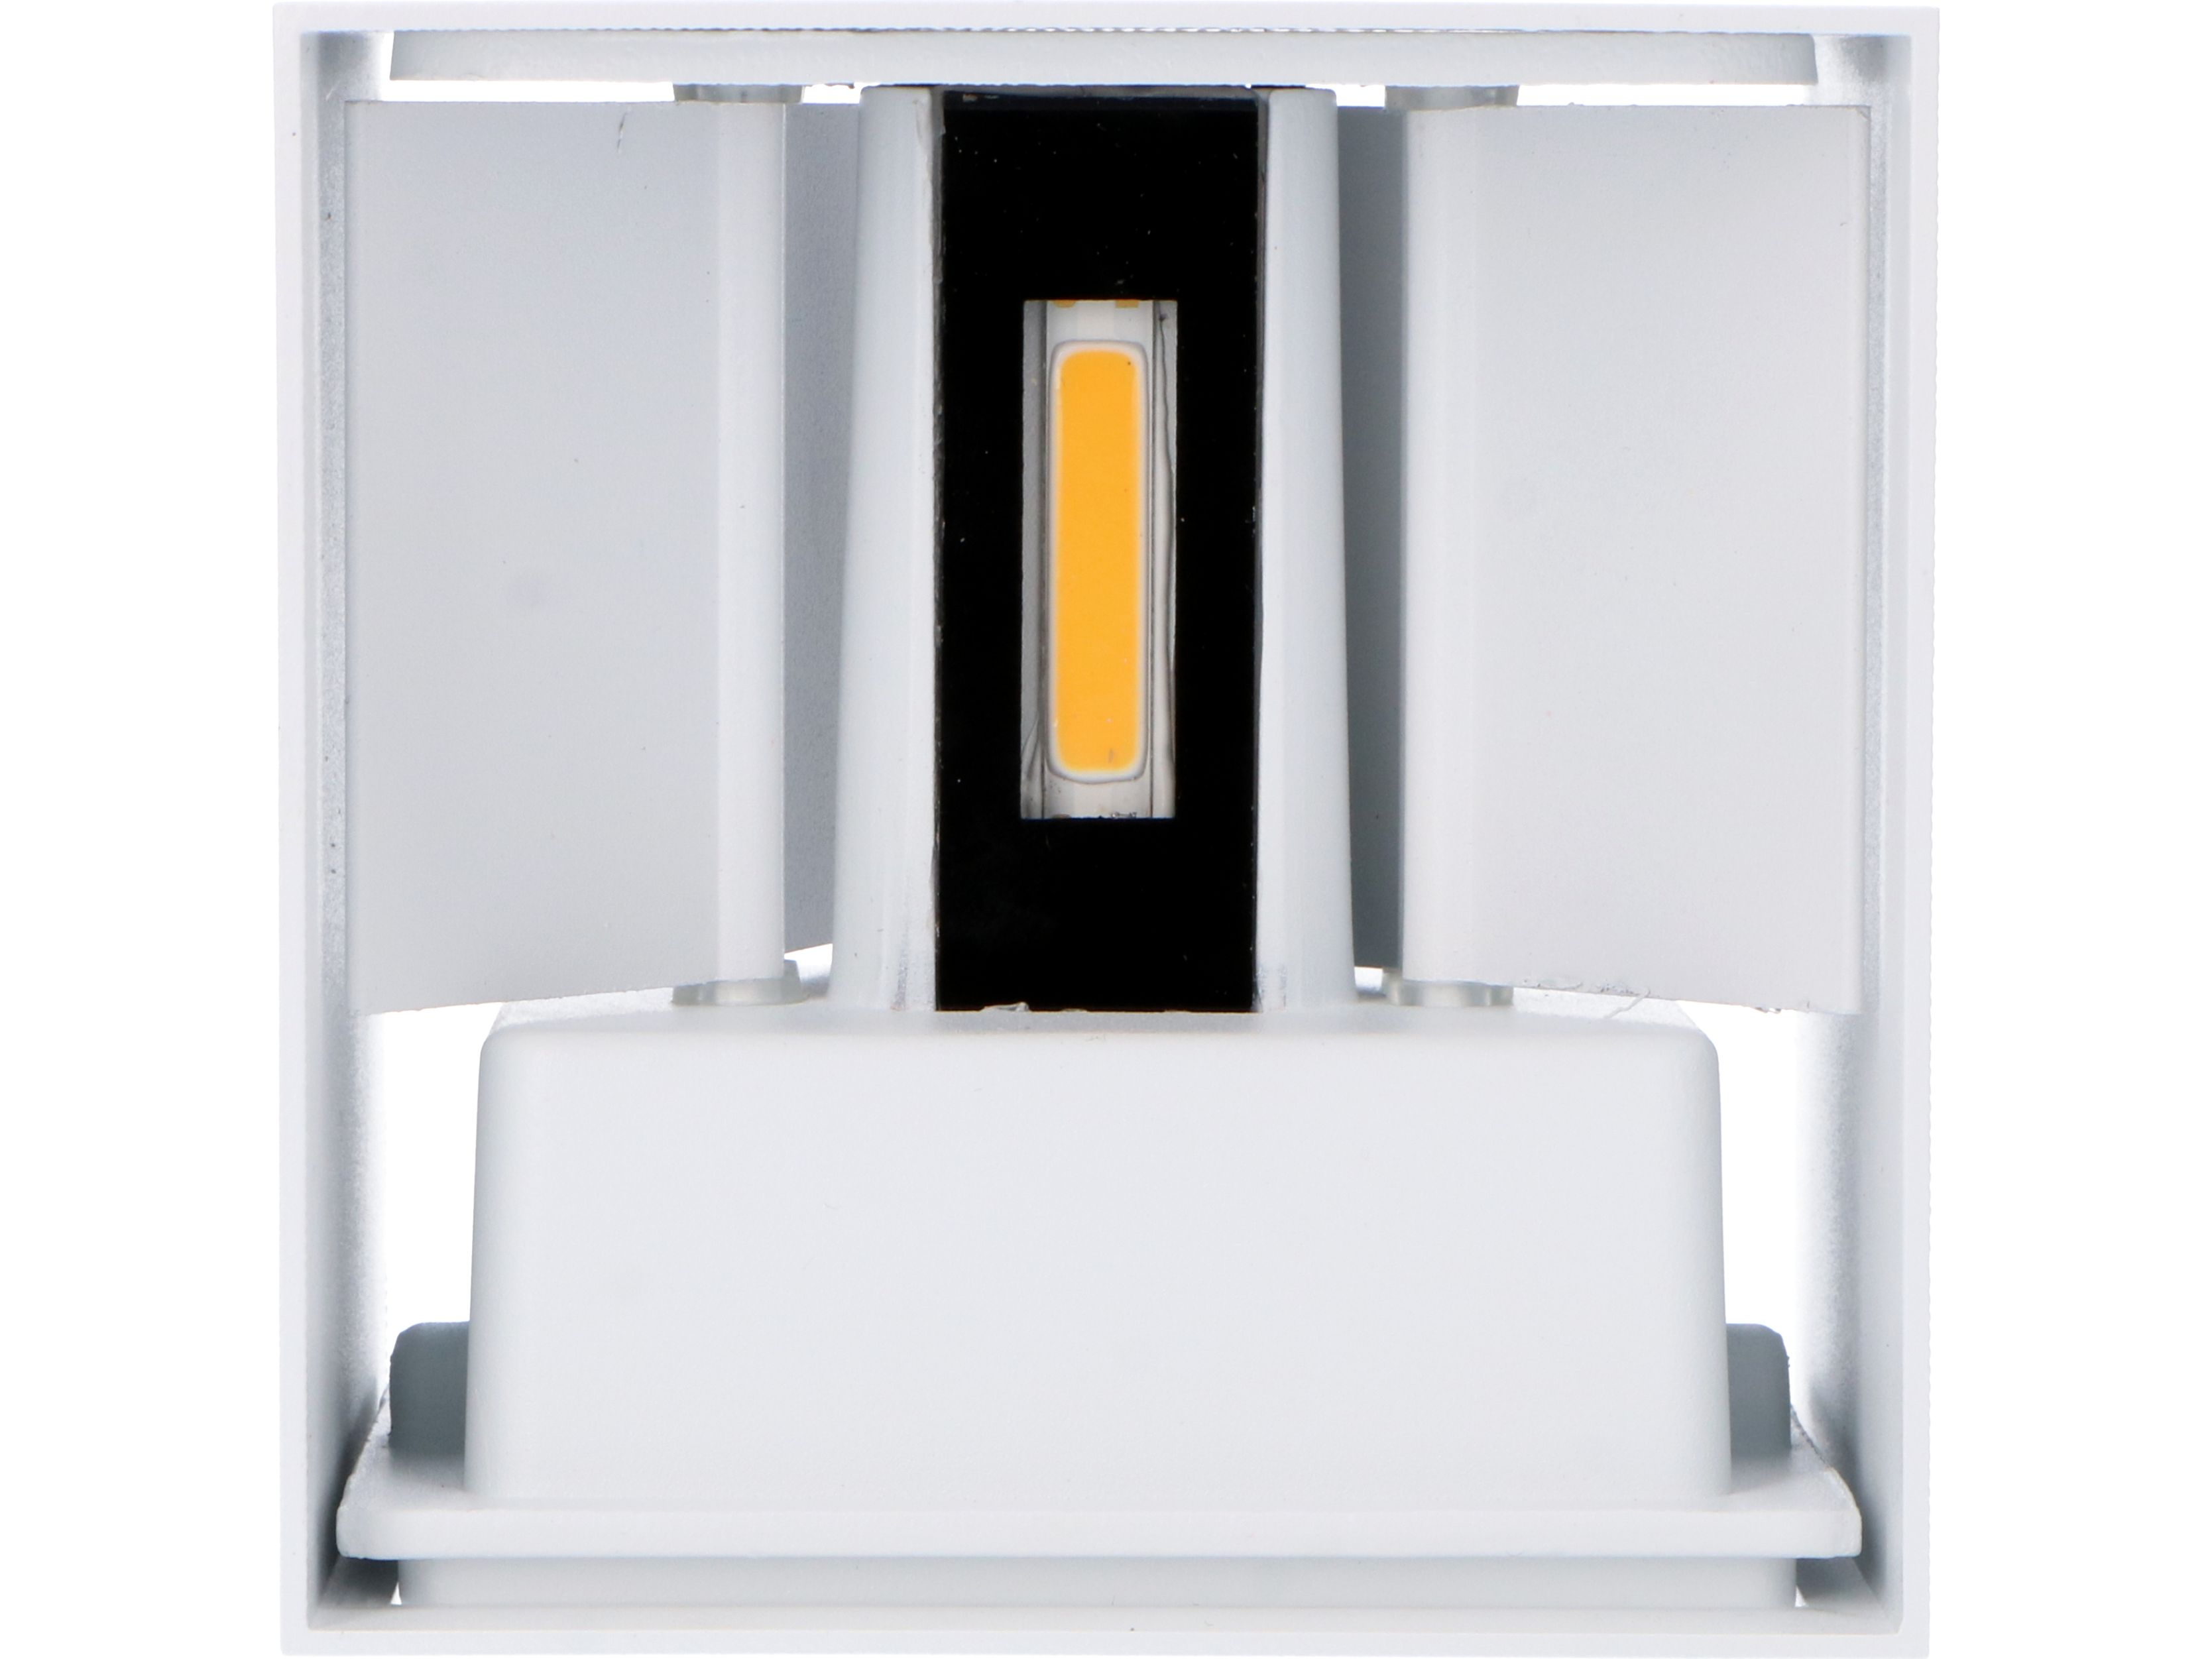 2x-leds-light-outdoor-wandlamp-amarillo-led